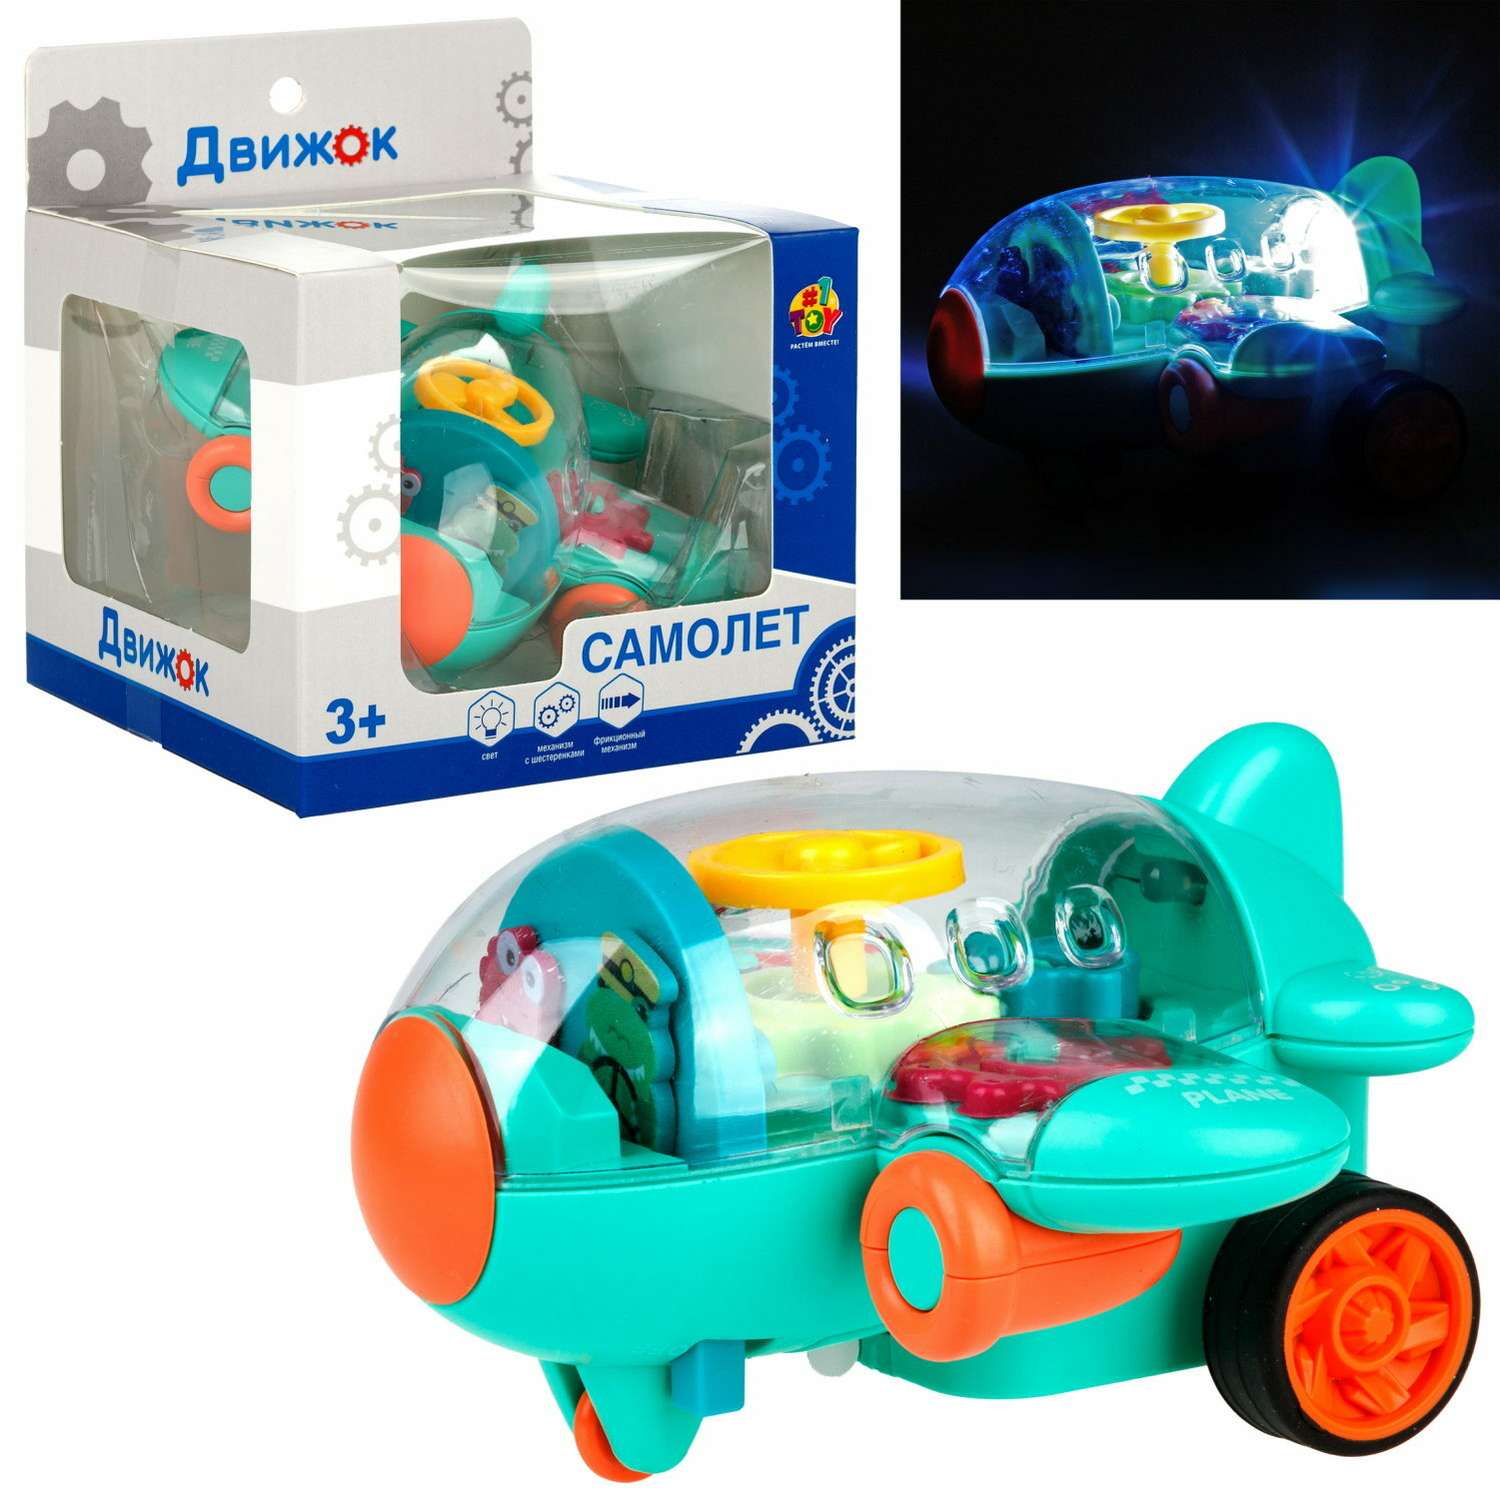 Самолет игрушка для детей 1TOY Движок бирюзовый прозрачный с шестеренками светящийся на батарейках - фото 3